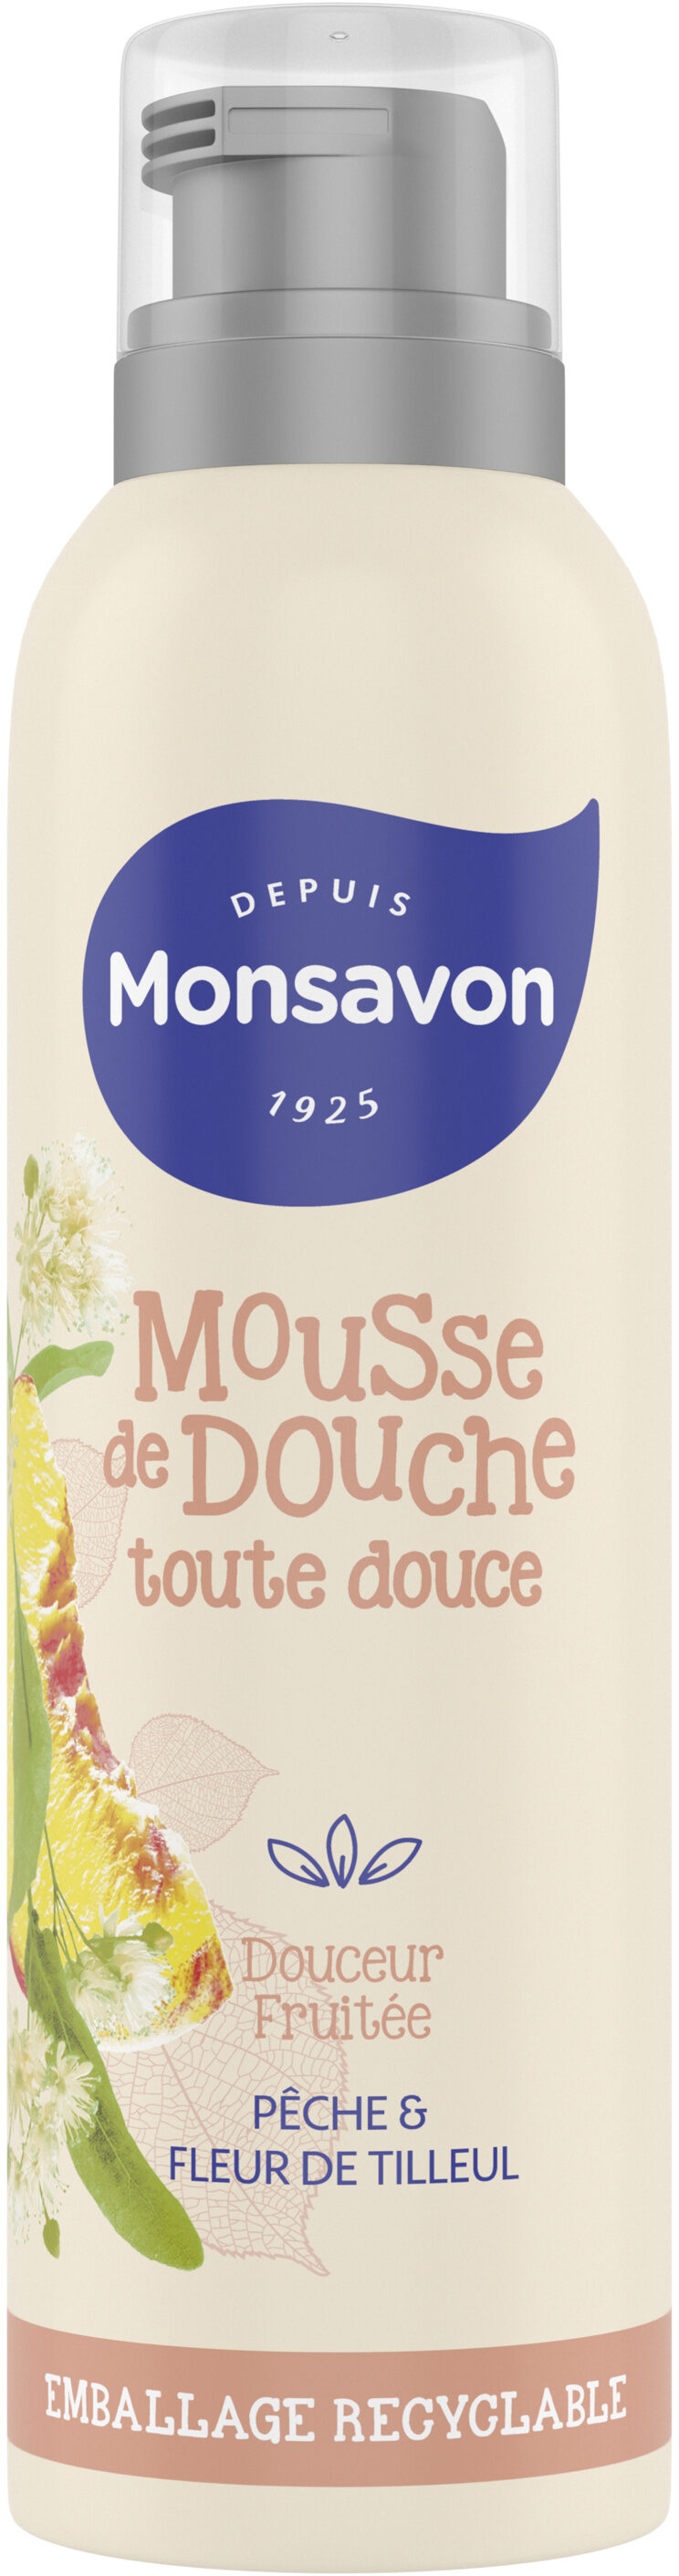 Monsavon Gel Douche Mousse Douceur Fruitée Pêche & Tilleul - 製品 - fr